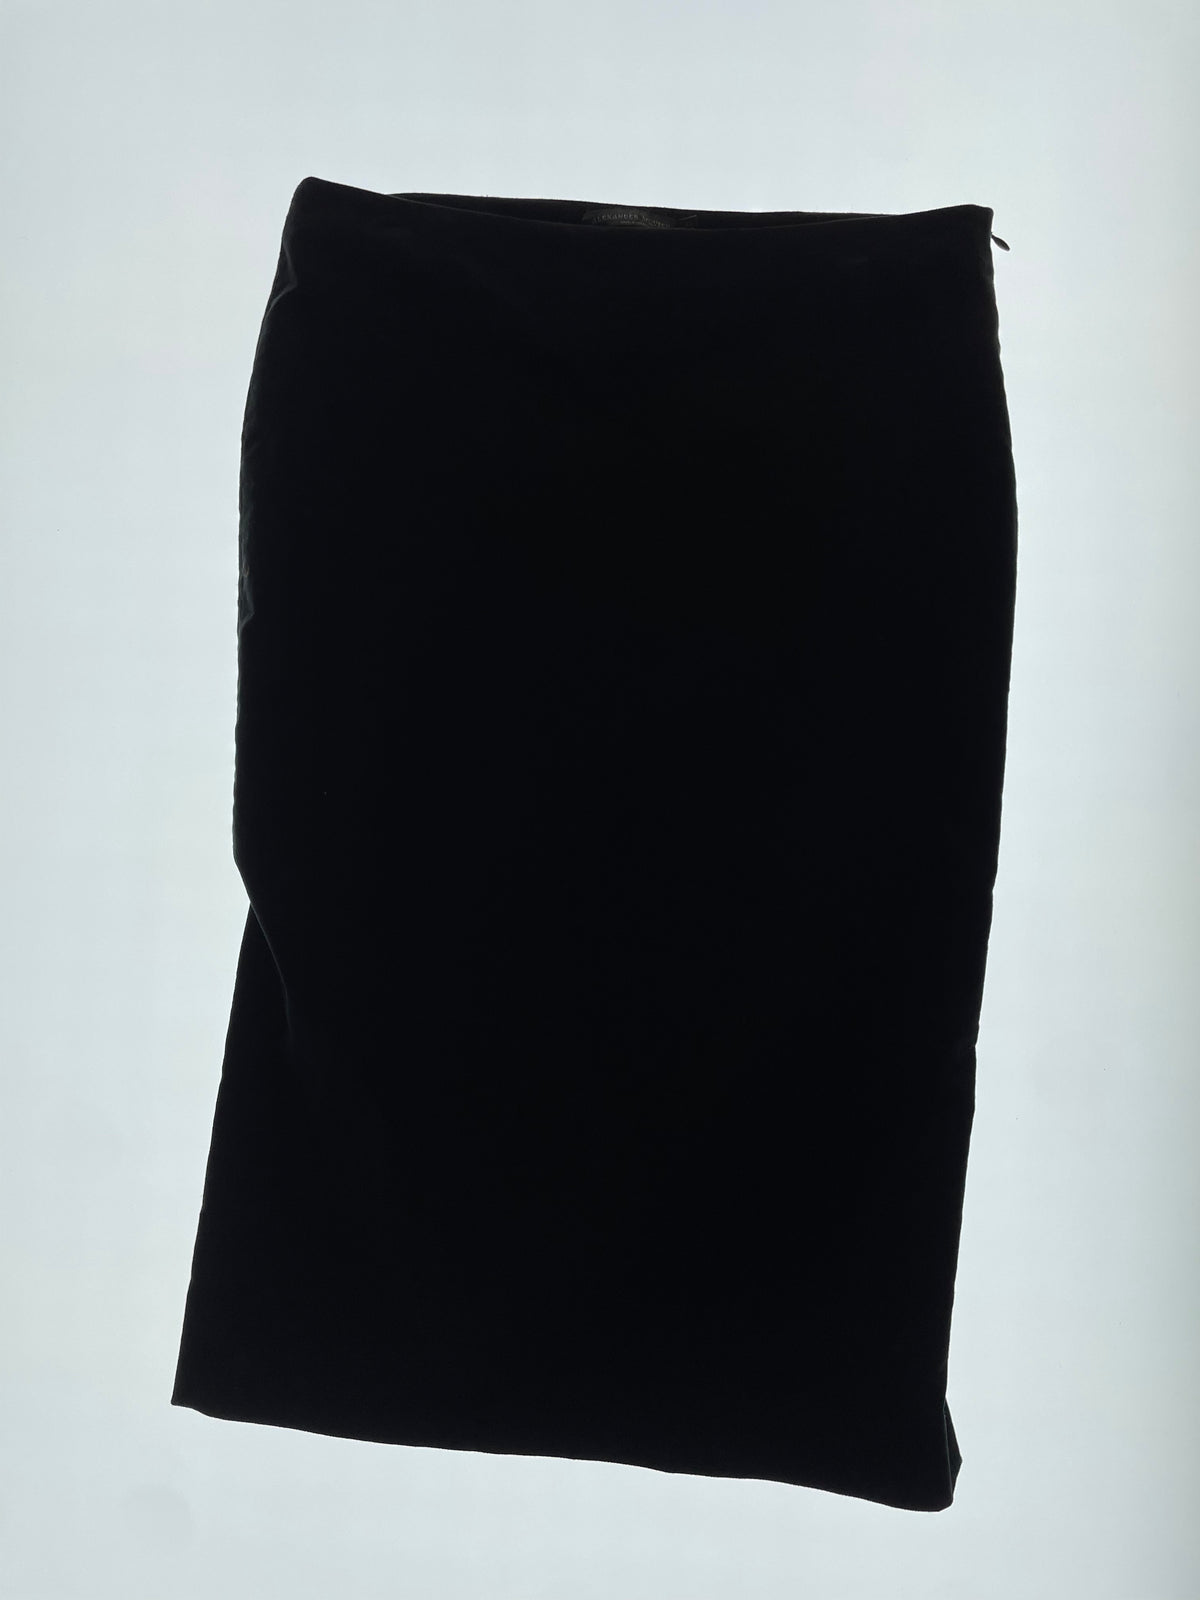 FW 05 Black Velvet Skirt